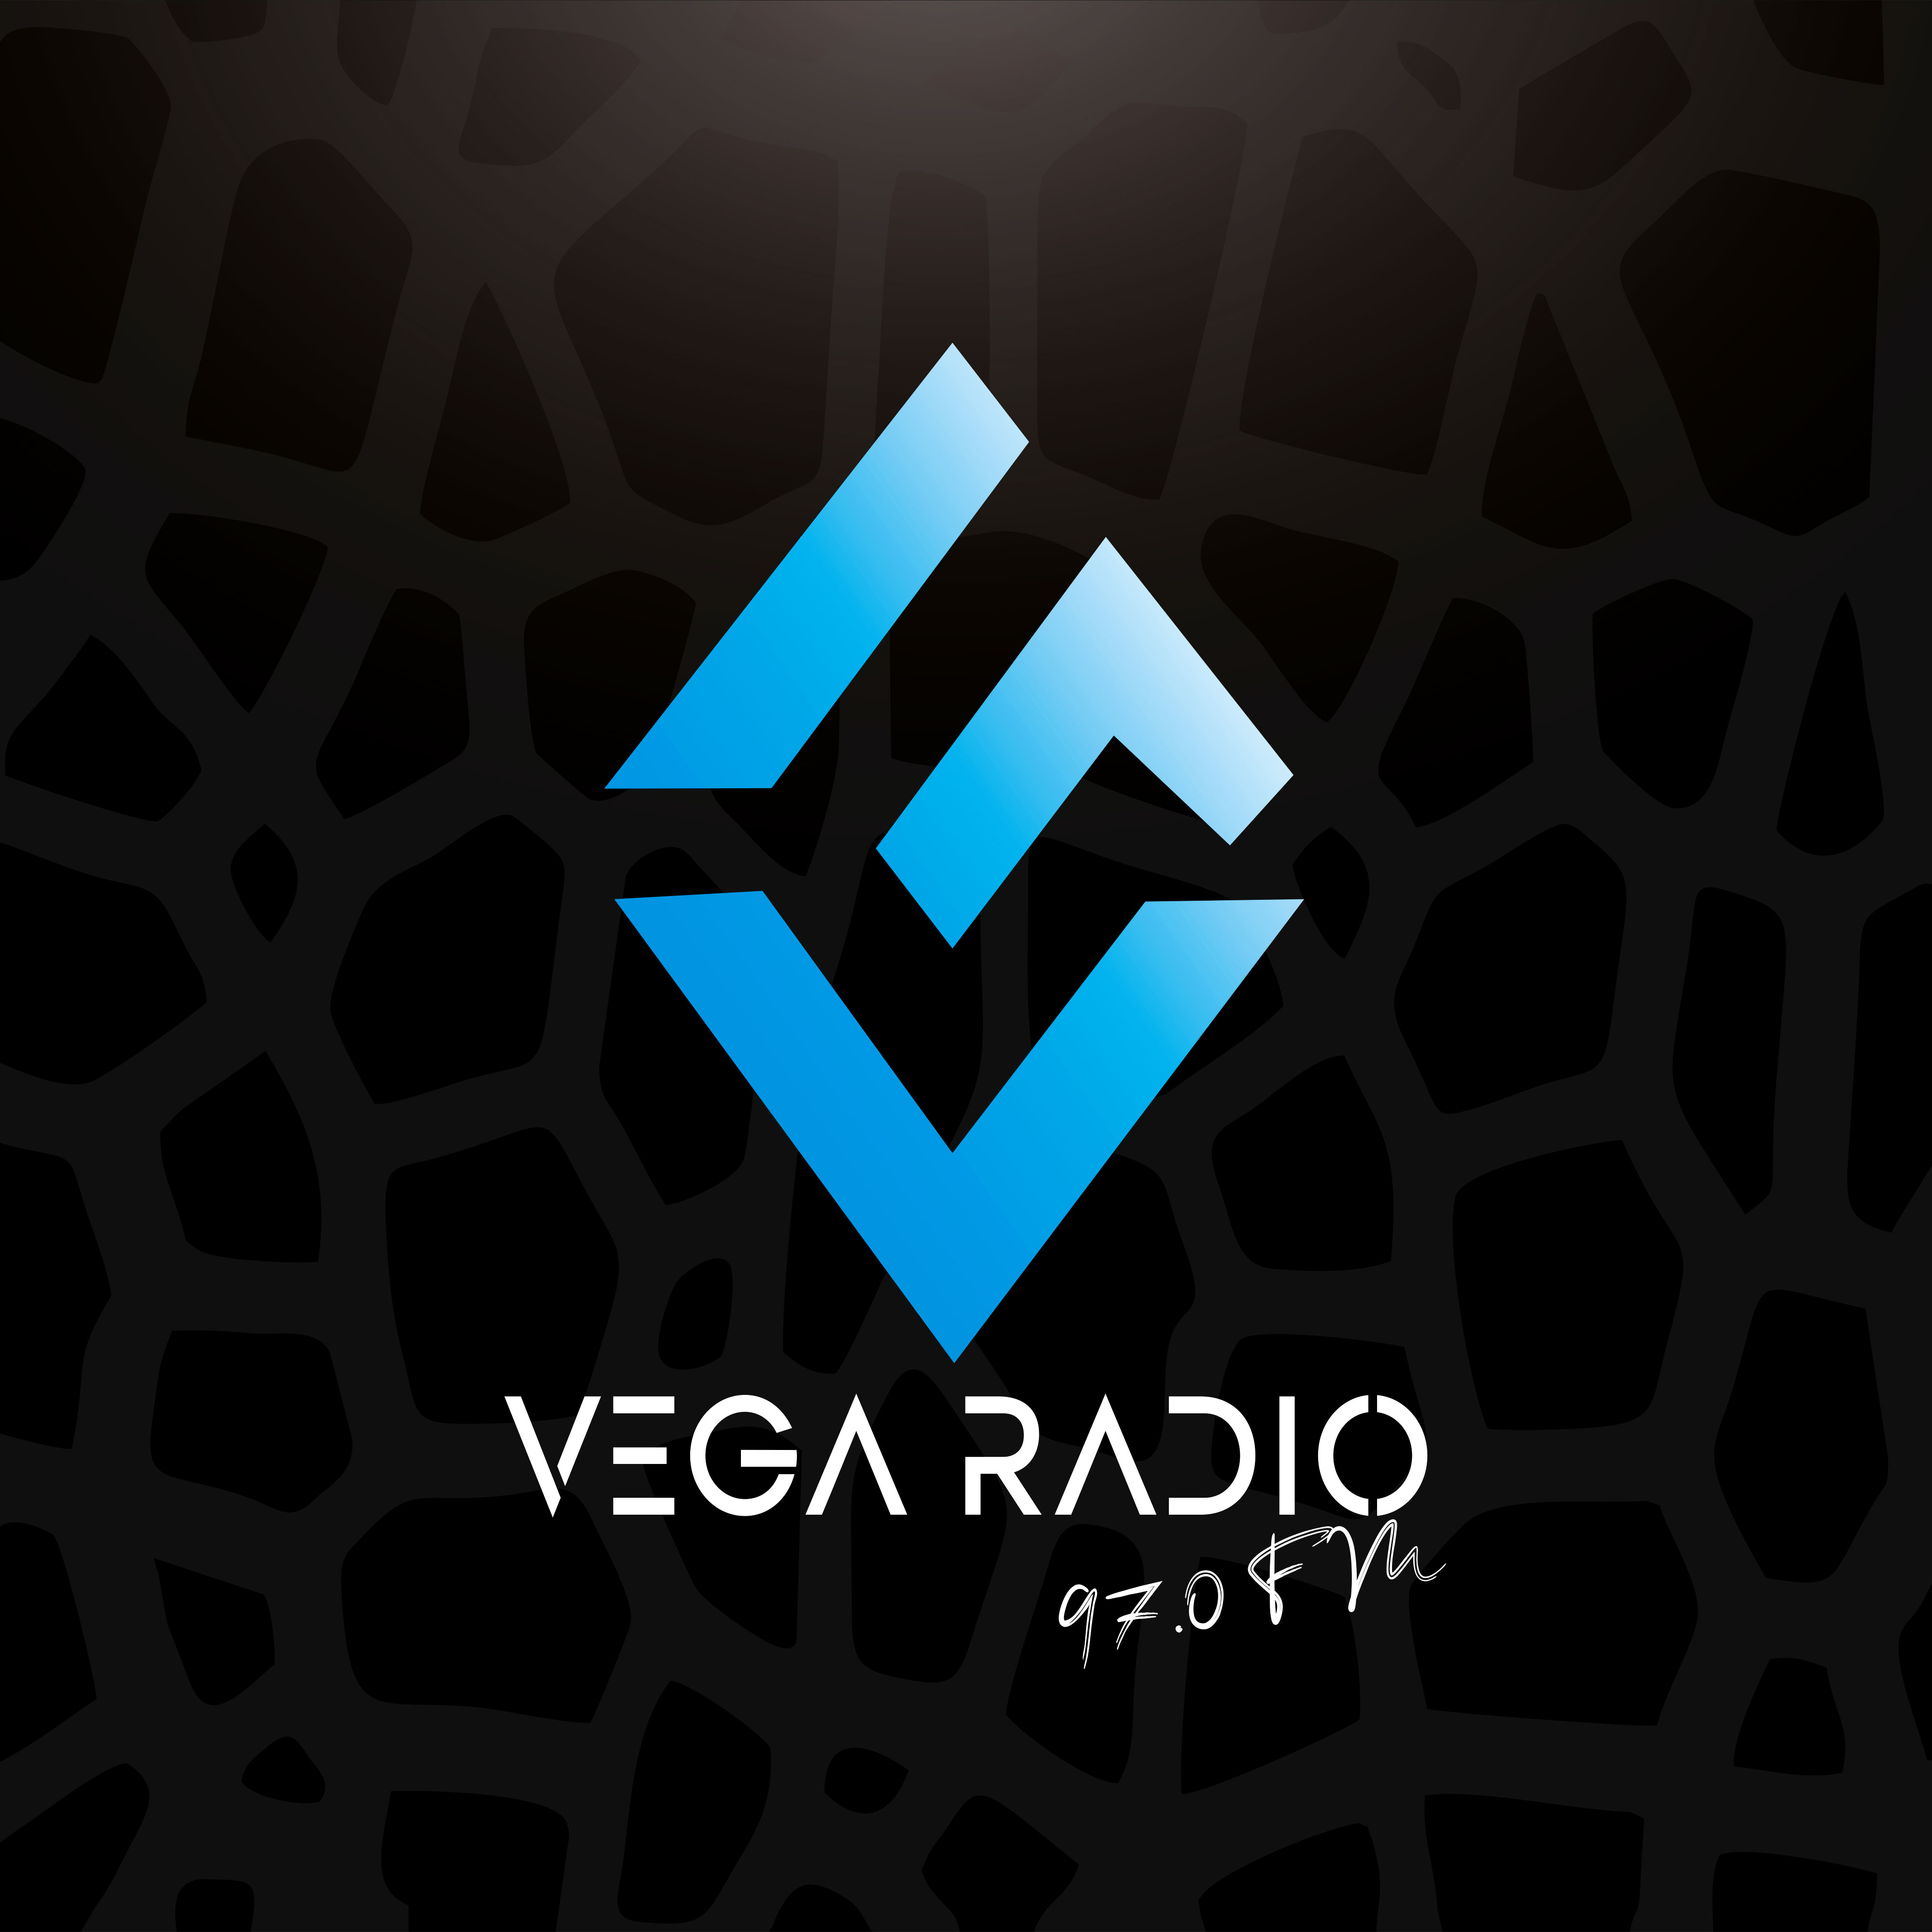 VEGA RADIP FM 97.0